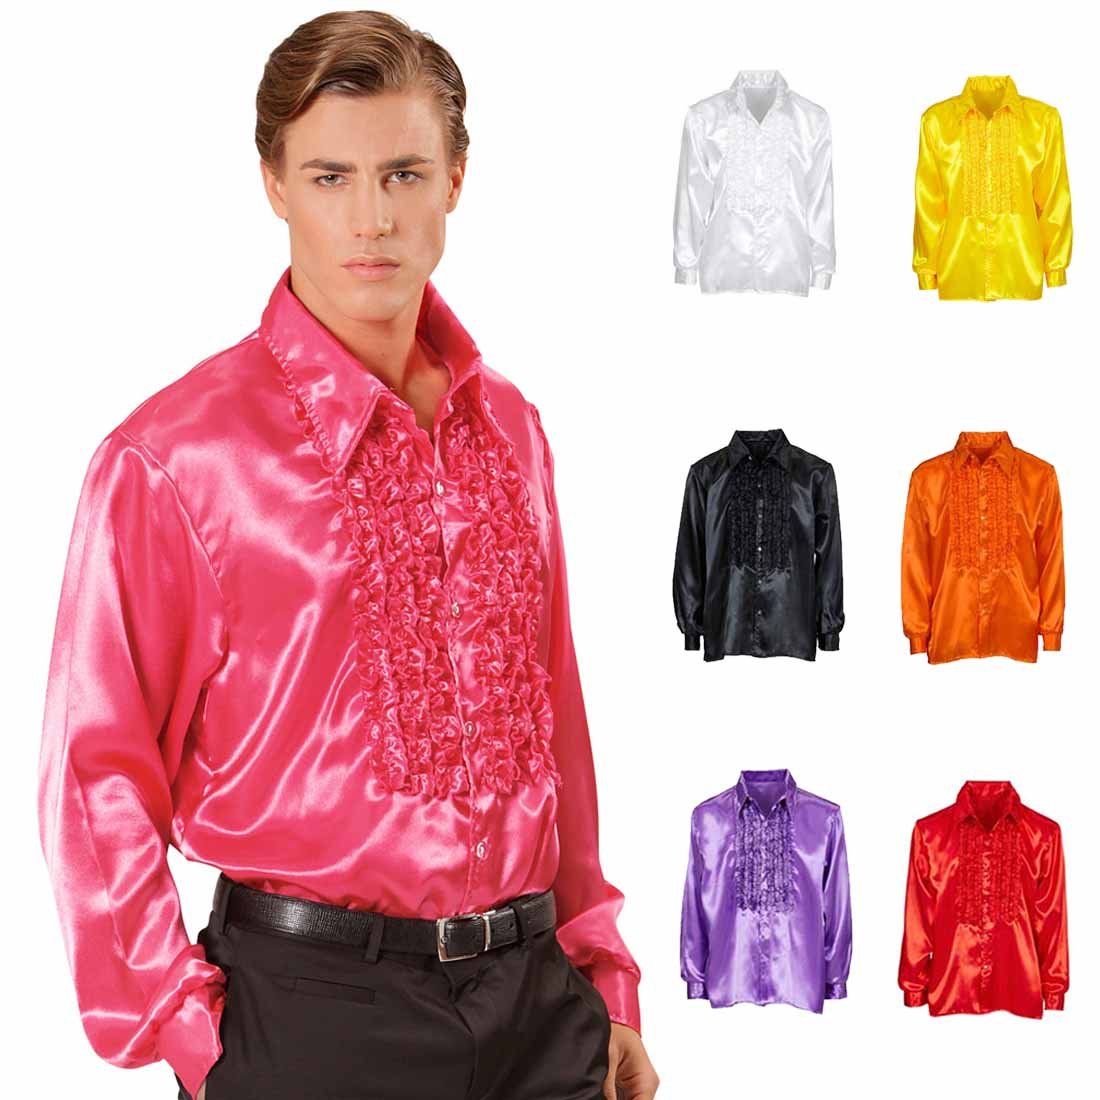 Amakando Rüschenhemd Schlagerstar 70er Jahre Hemd XL 54 pink Disco Satinhemd Herrenhemd Schlager Schlagerparty Accessoire Saturday Night Fever